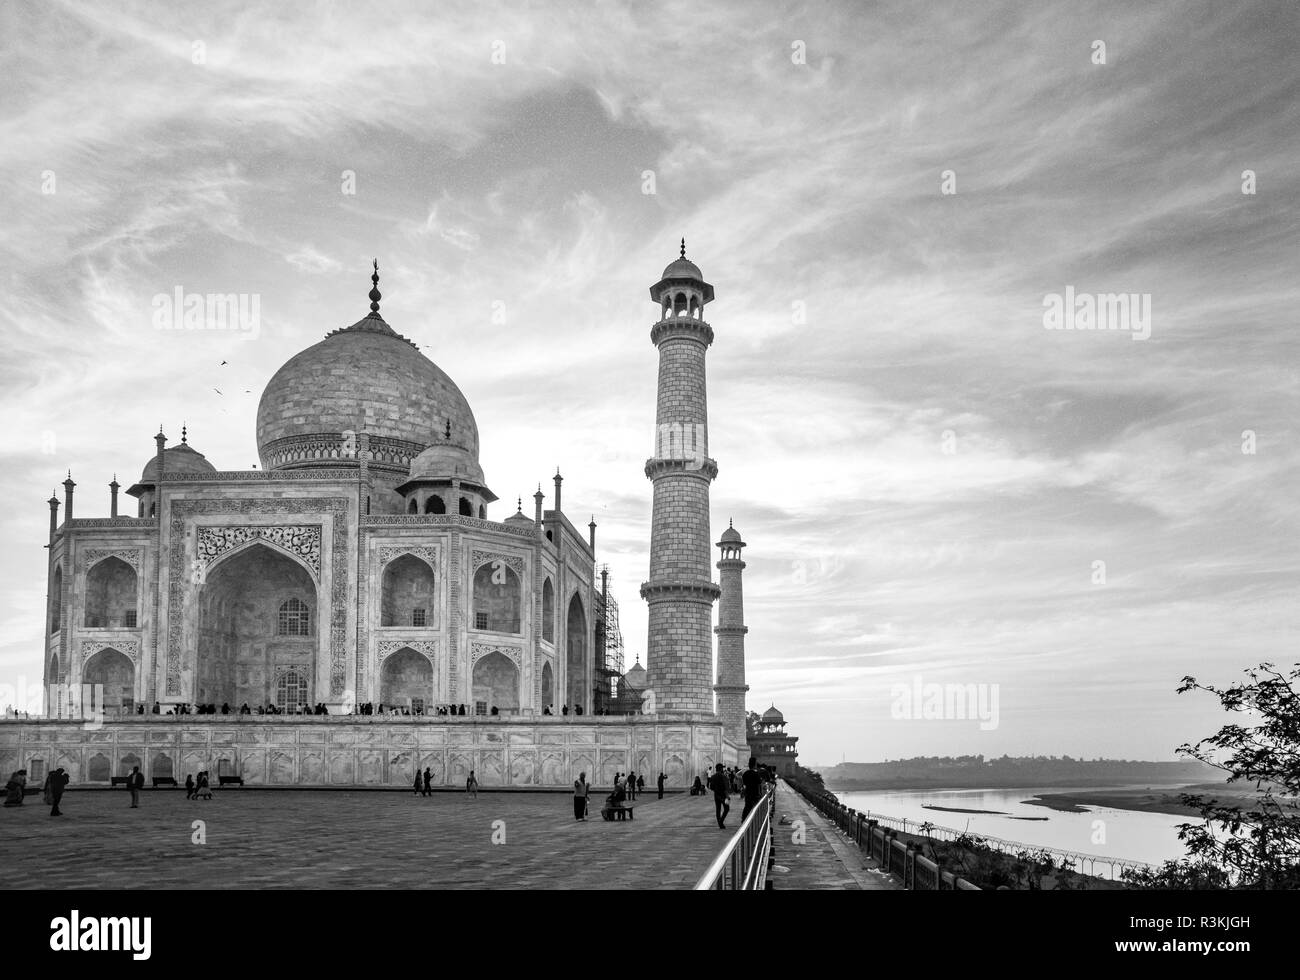 India, Uttar Pradesh. Agra. Senza acqua né vita expedition, Taj Mahal tomba e minareti sul fiume Yamuna (affluente del fiume Gange) al tramonto Foto Stock